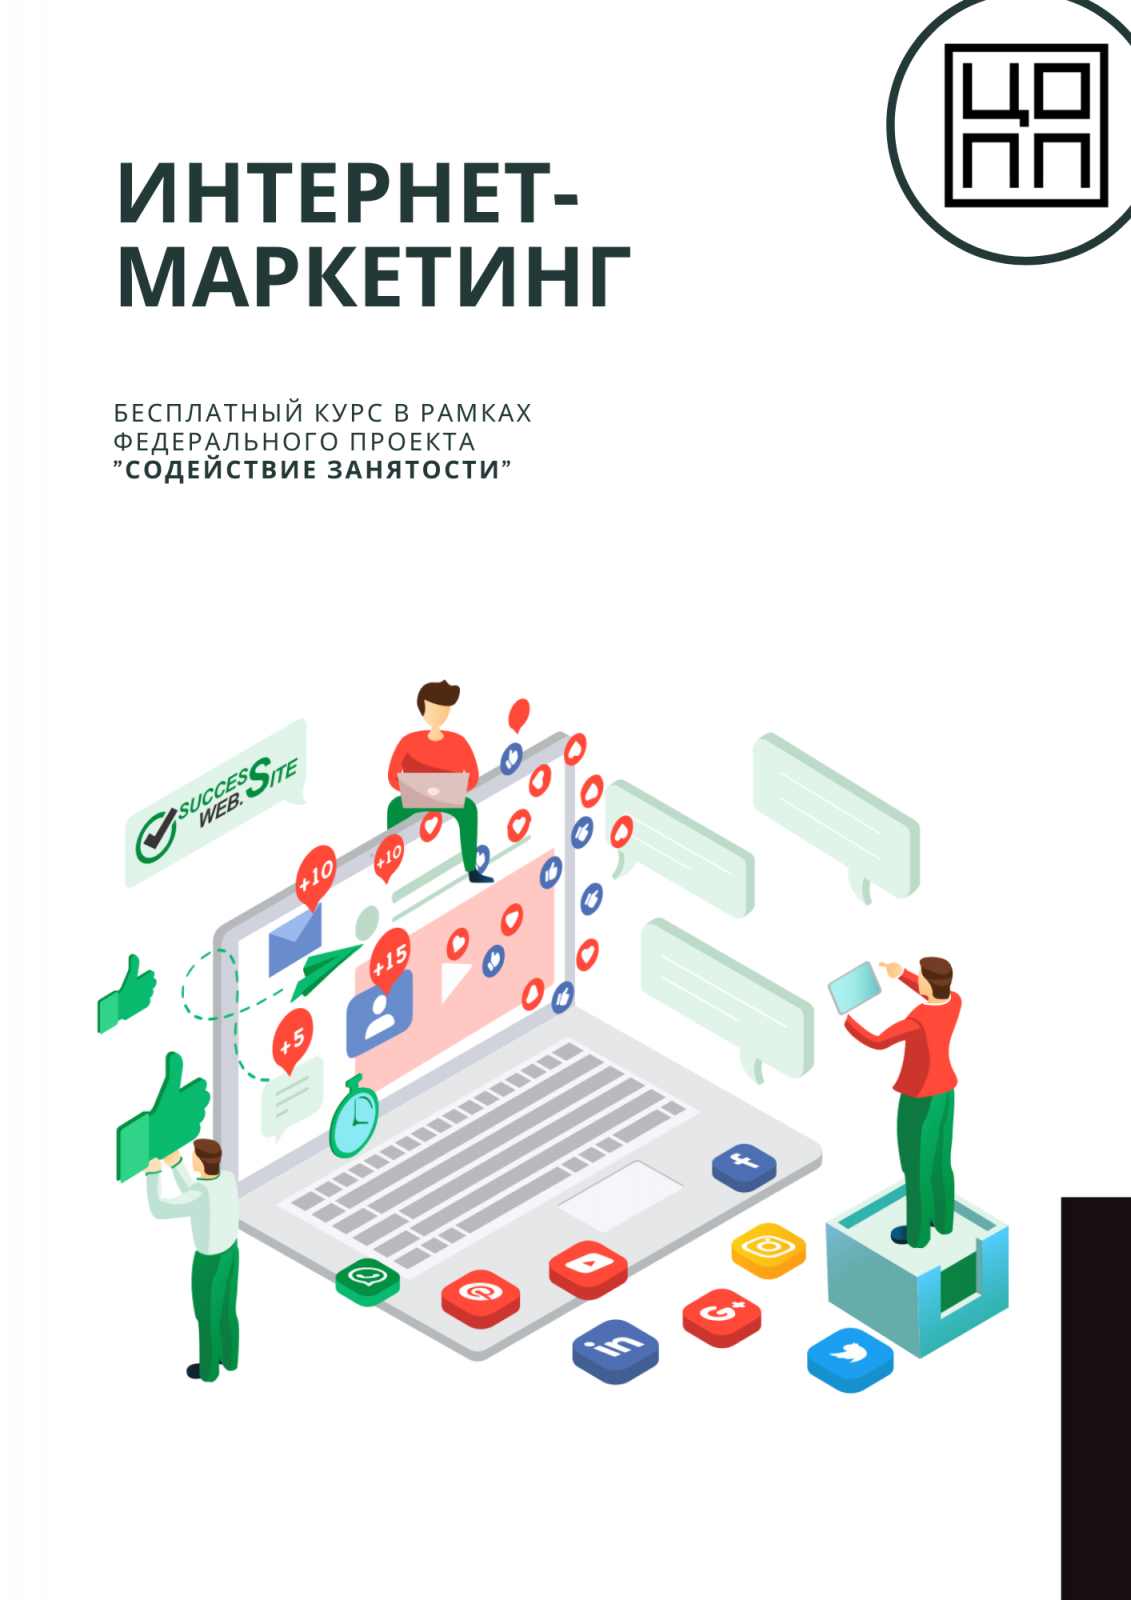 ЦОПП Якутии приглашает освоить востребованную профессию  интернет-маркетолога бесплатно